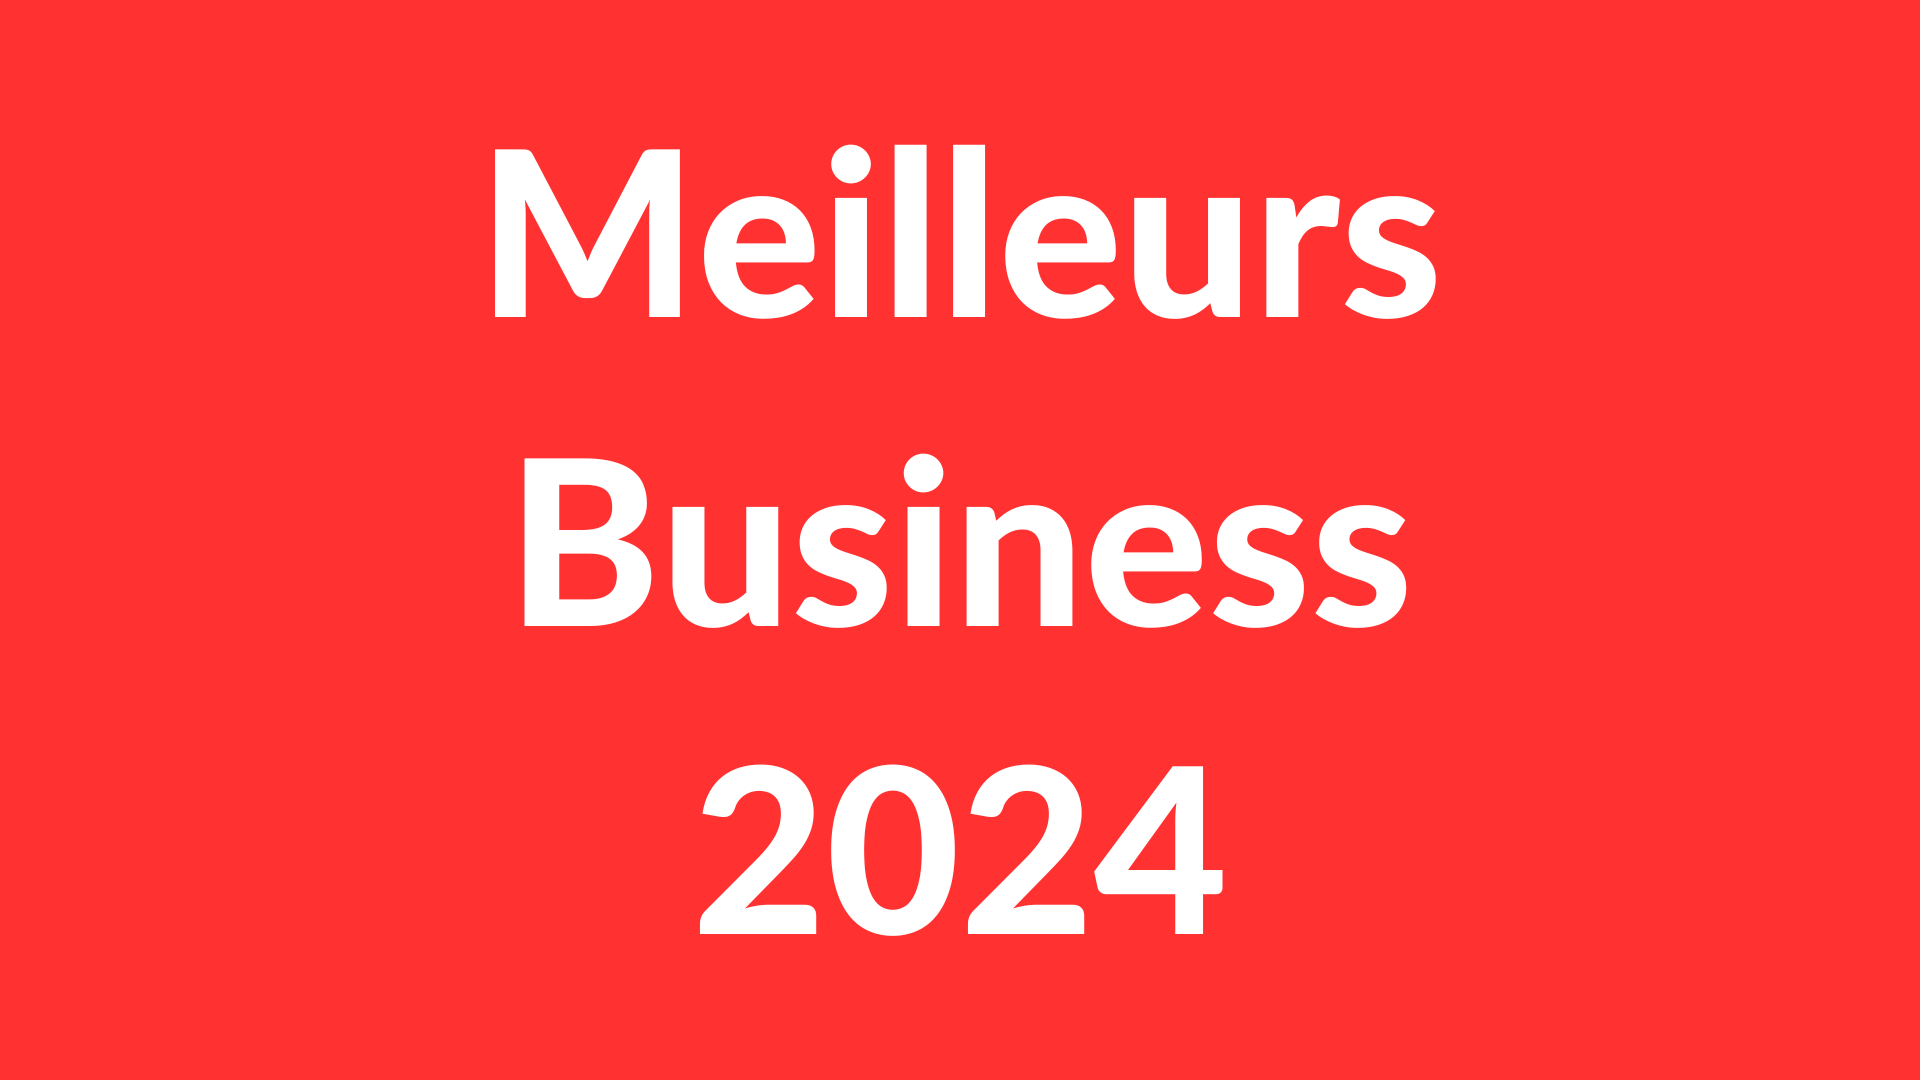 Les Meilleurs Business 2024